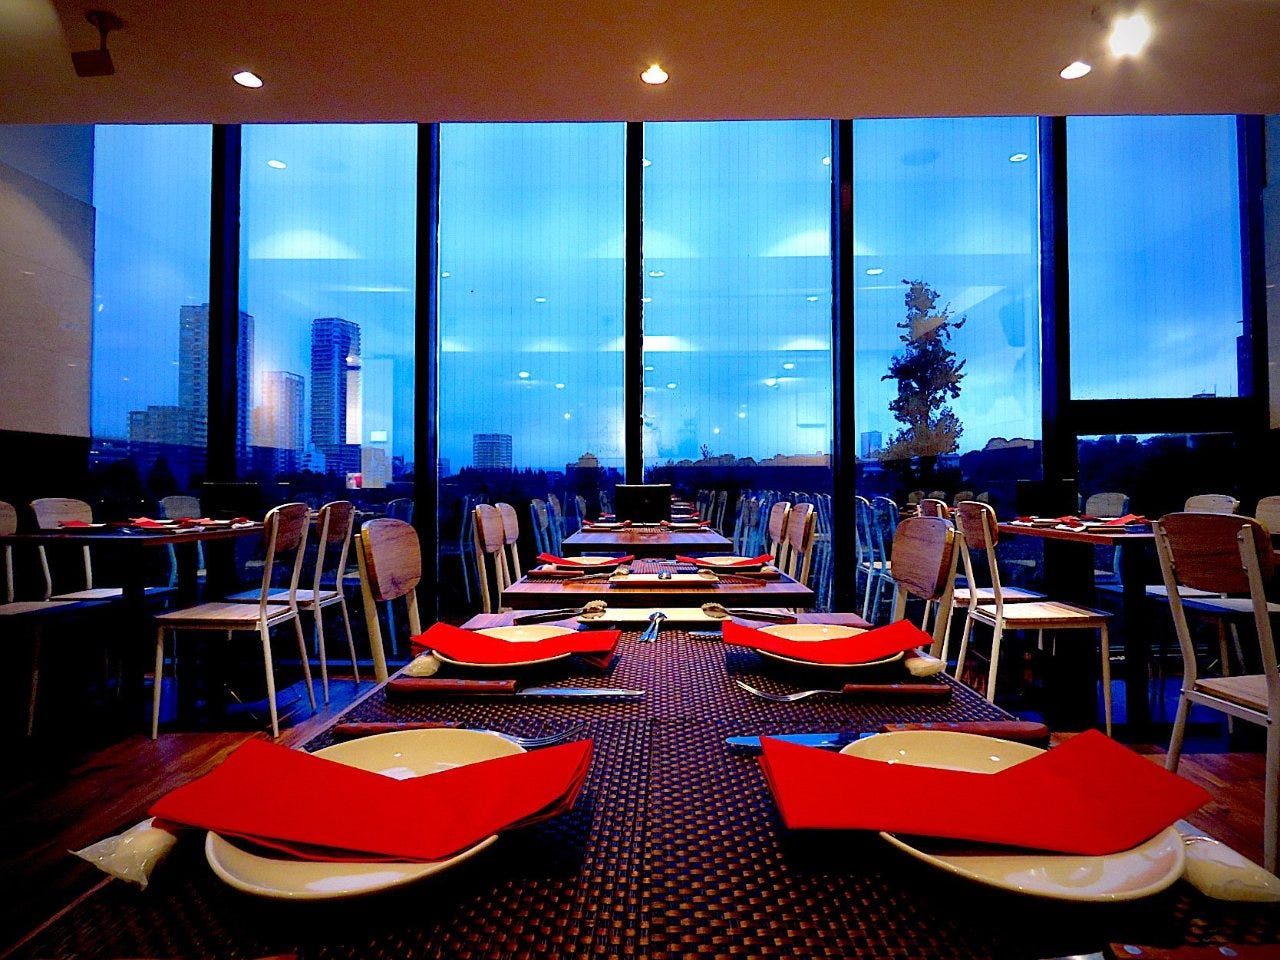 都会の景色を望む壁一面の大きな窓と、赤いナフキンのあるテーブル